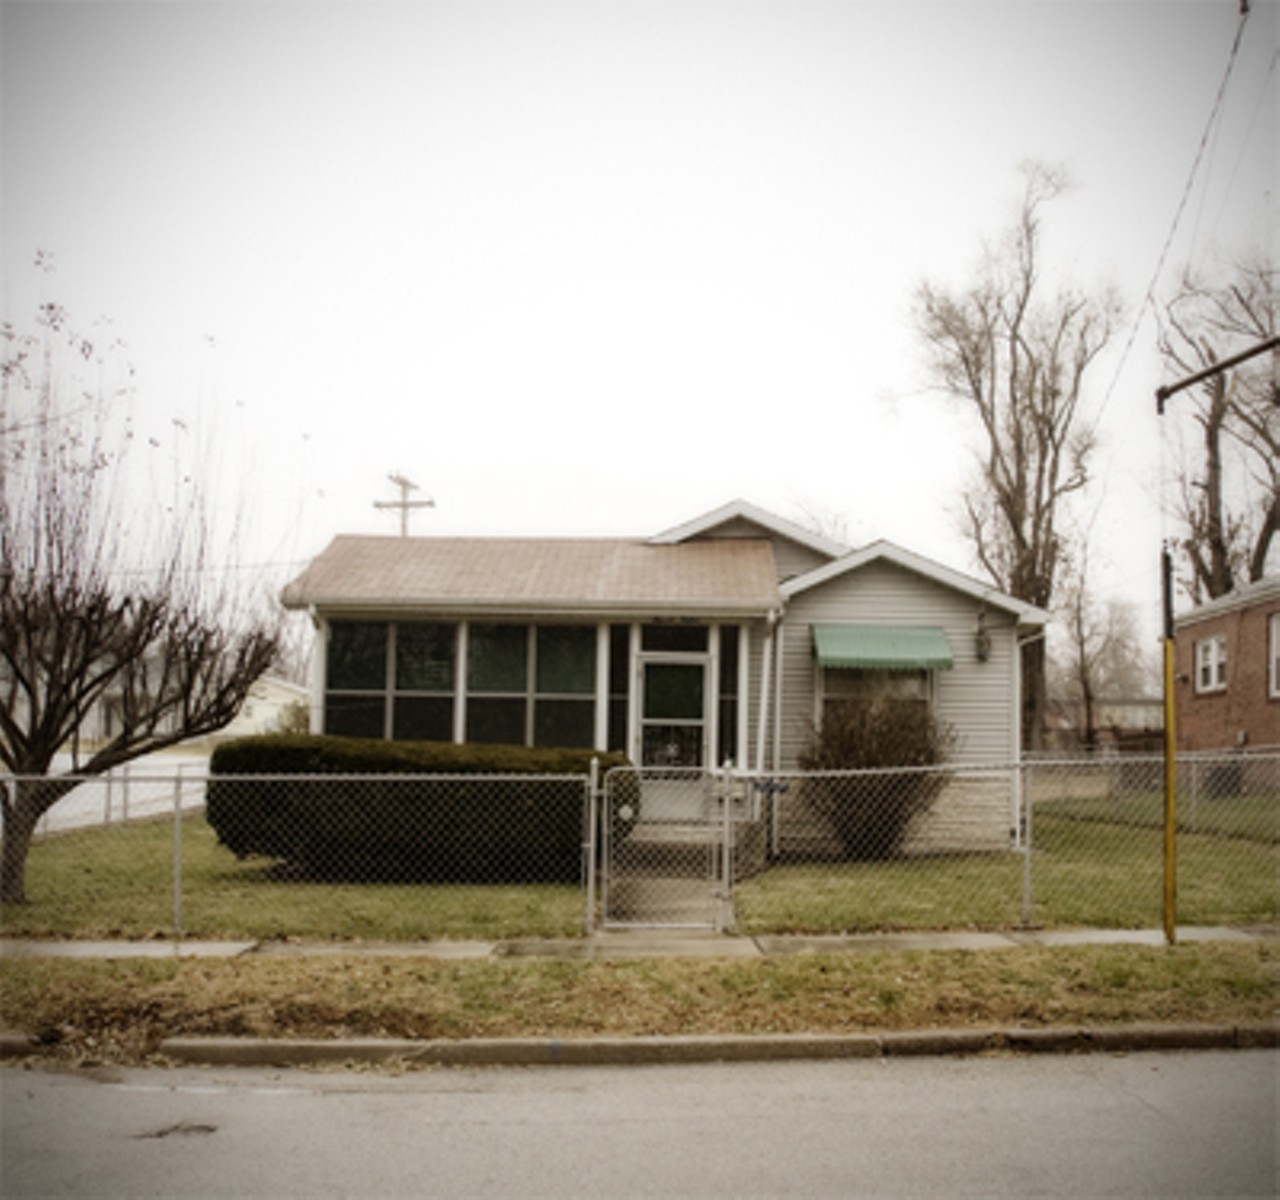 House where Miles Davis was born. Alton, Illinois.